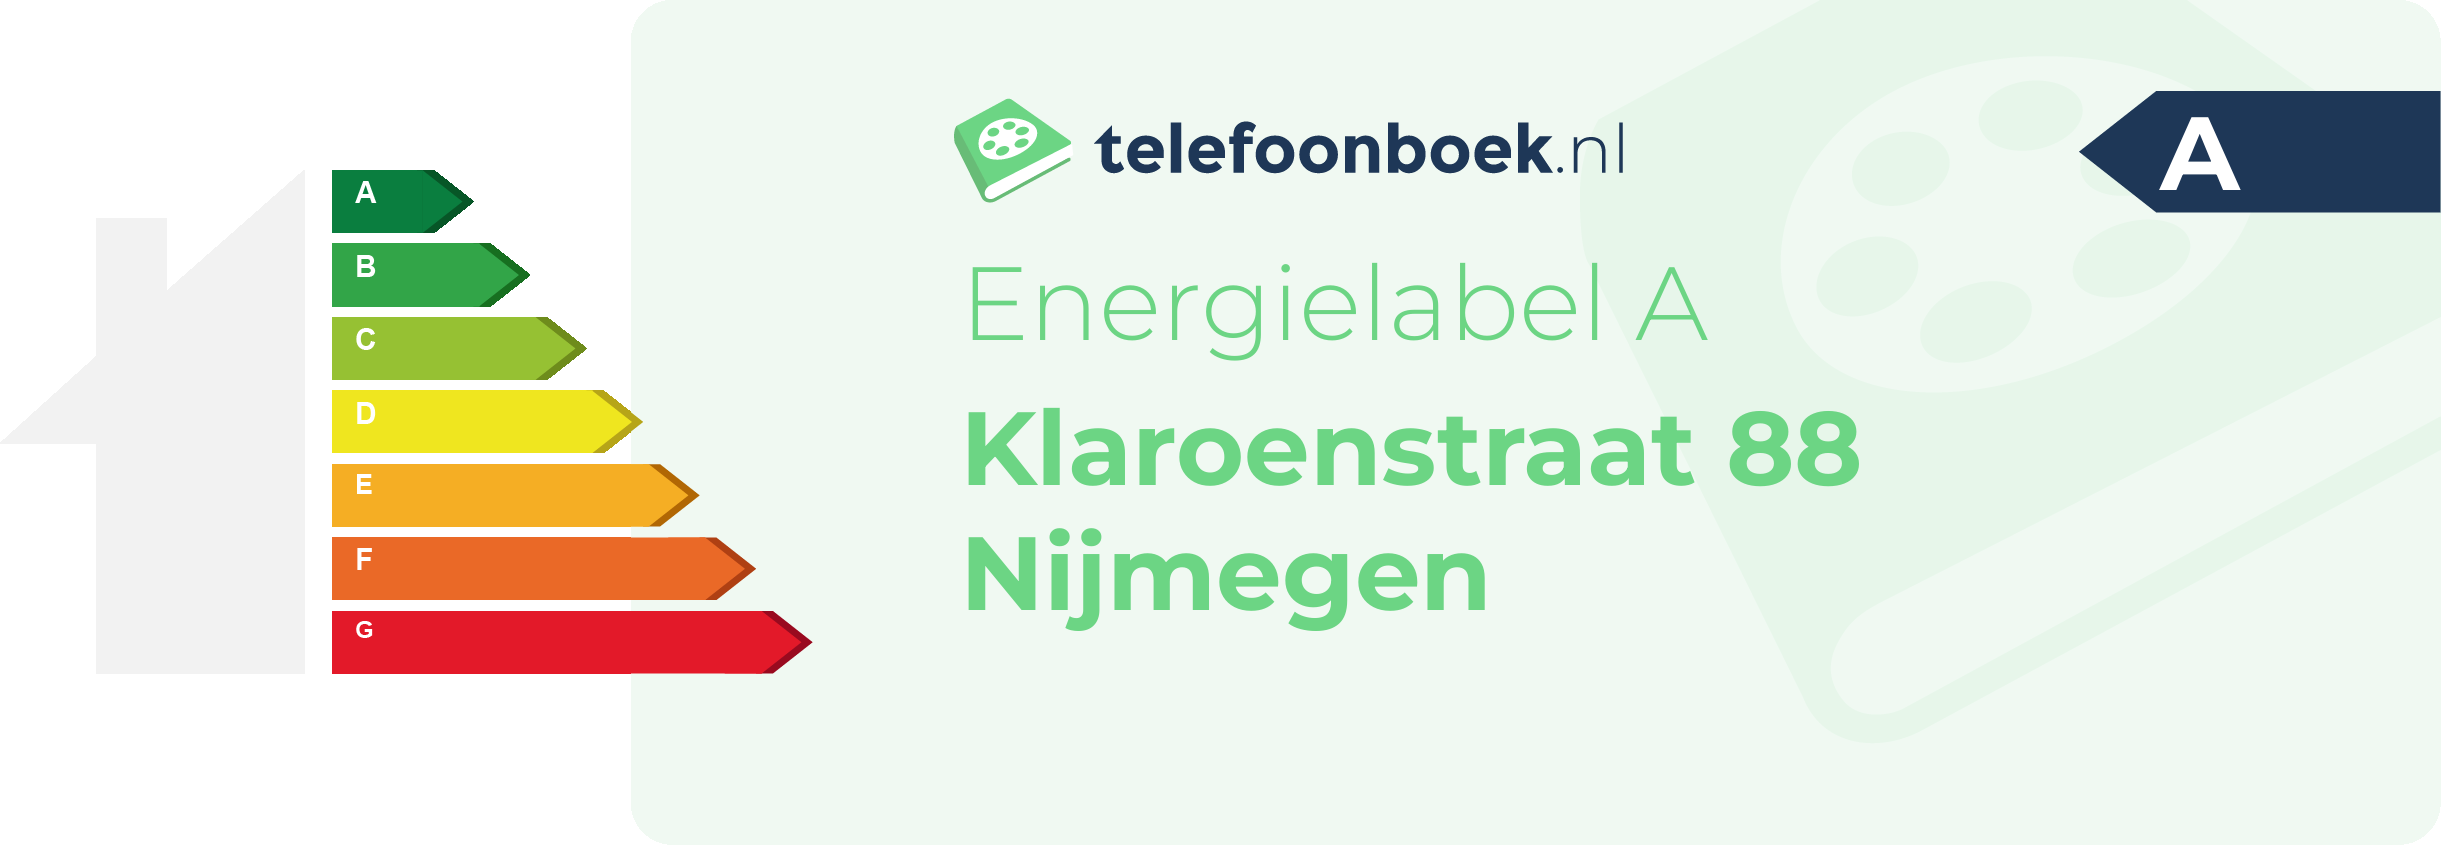 Energielabel Klaroenstraat 88 Nijmegen